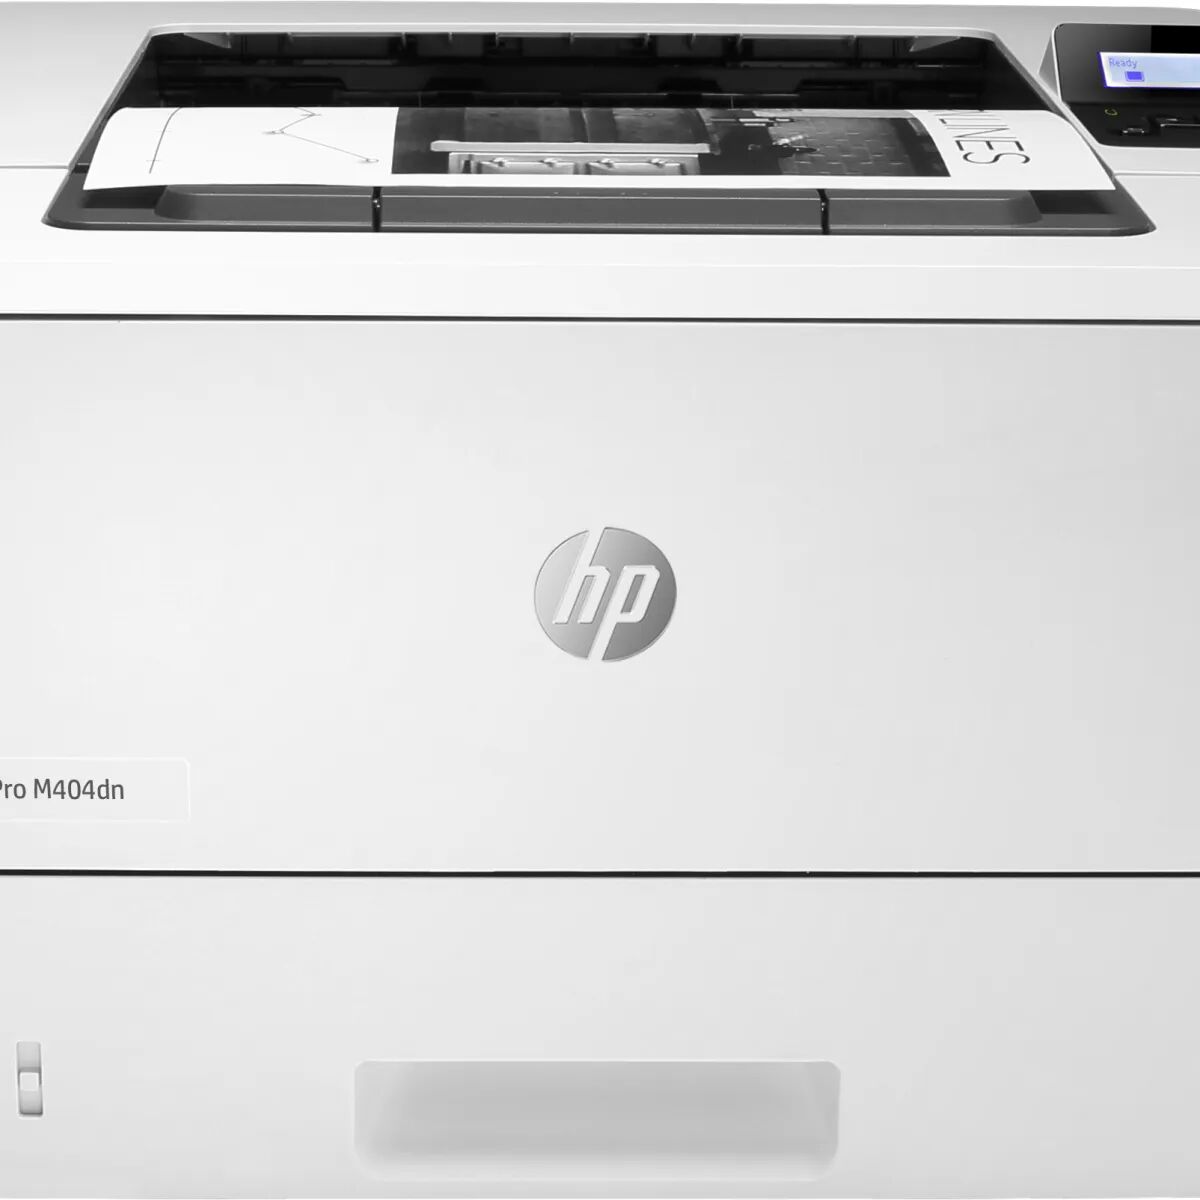 HP Stampante laser  LaserJet Pro M404dn, Stampa, Elevata velocità i stampa della prima pagina; dimensioni compatte; risparmio energetico; avanzate funzionalità di sicurezza [W1A53A#B19]